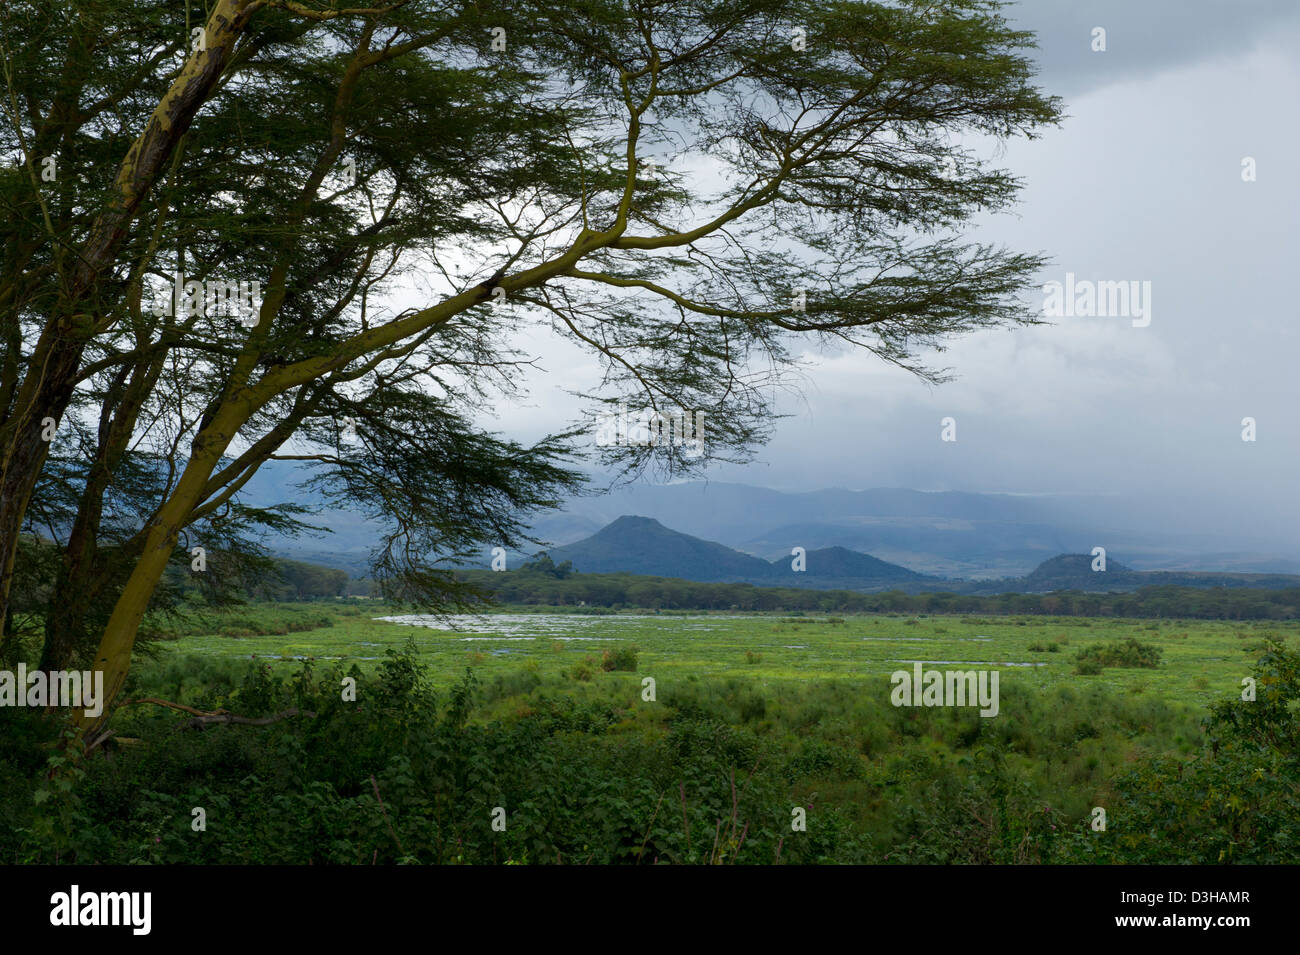 Lake Naivasha, Kenya Stock Photo